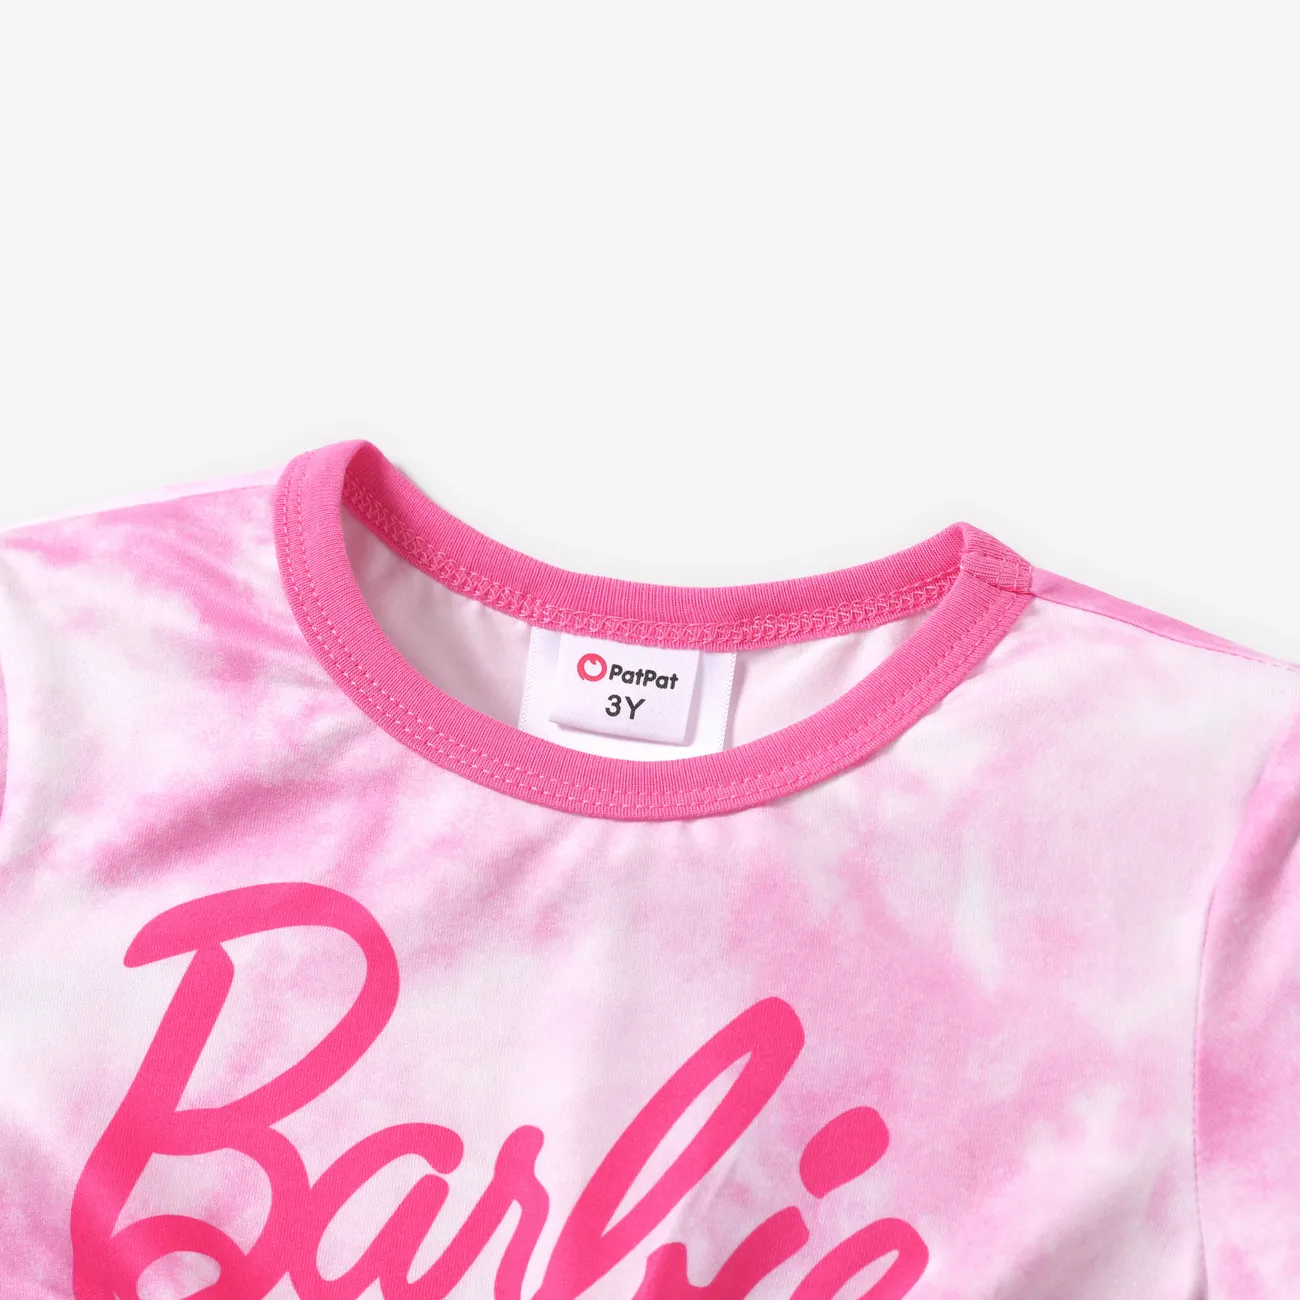 Barbie Ragazza Nodi Dolce Maglietta Rosa big image 1